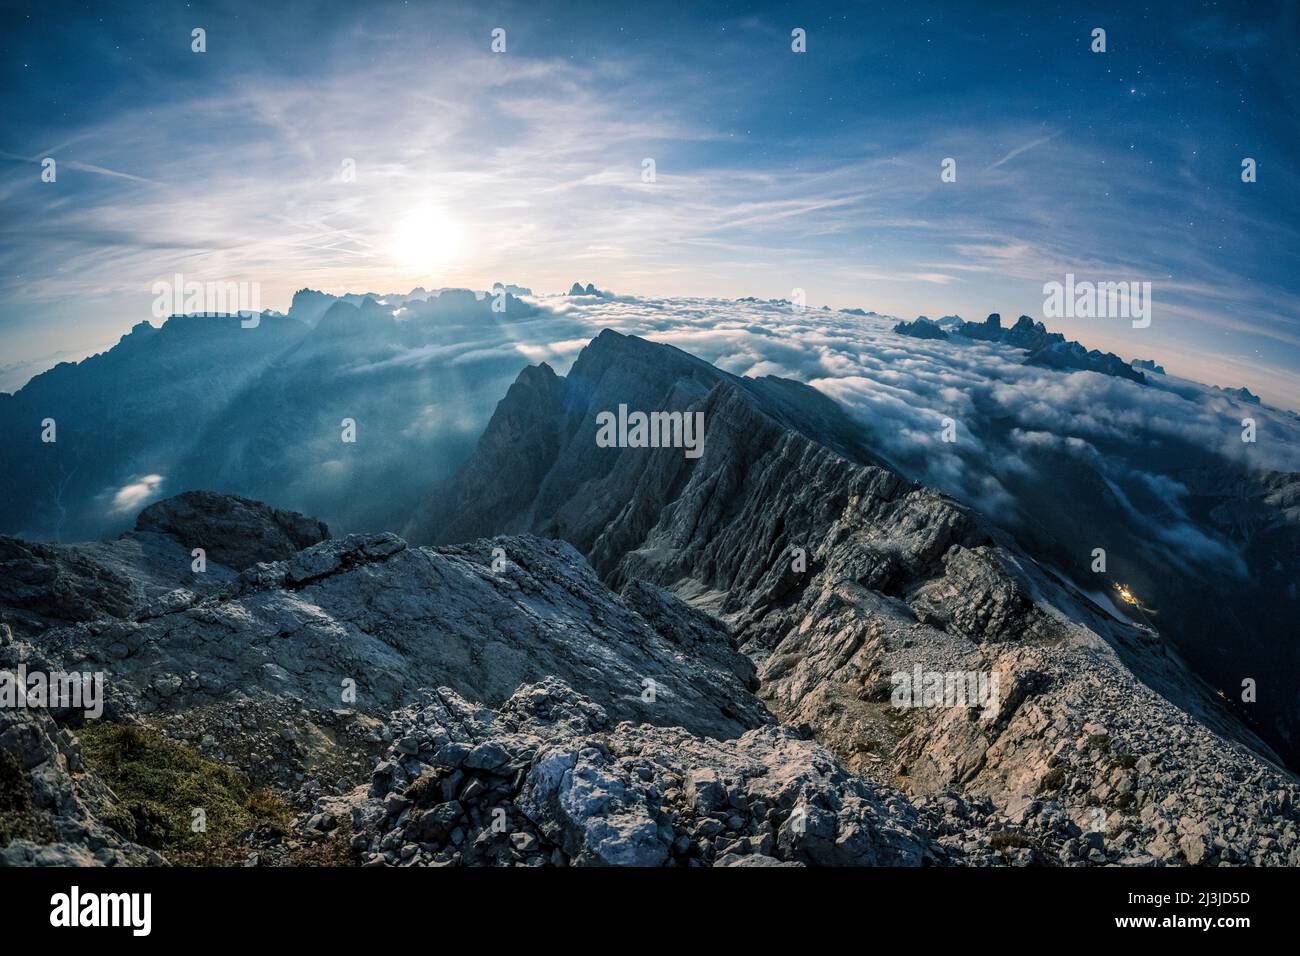 Europe, Italie, Alto Adige - Südtirol, vue sur les Dolomites Sexten depuis le sommet du Picco di Vallandro / Dürenstein de nuit avec le clair de lune Banque D'Images